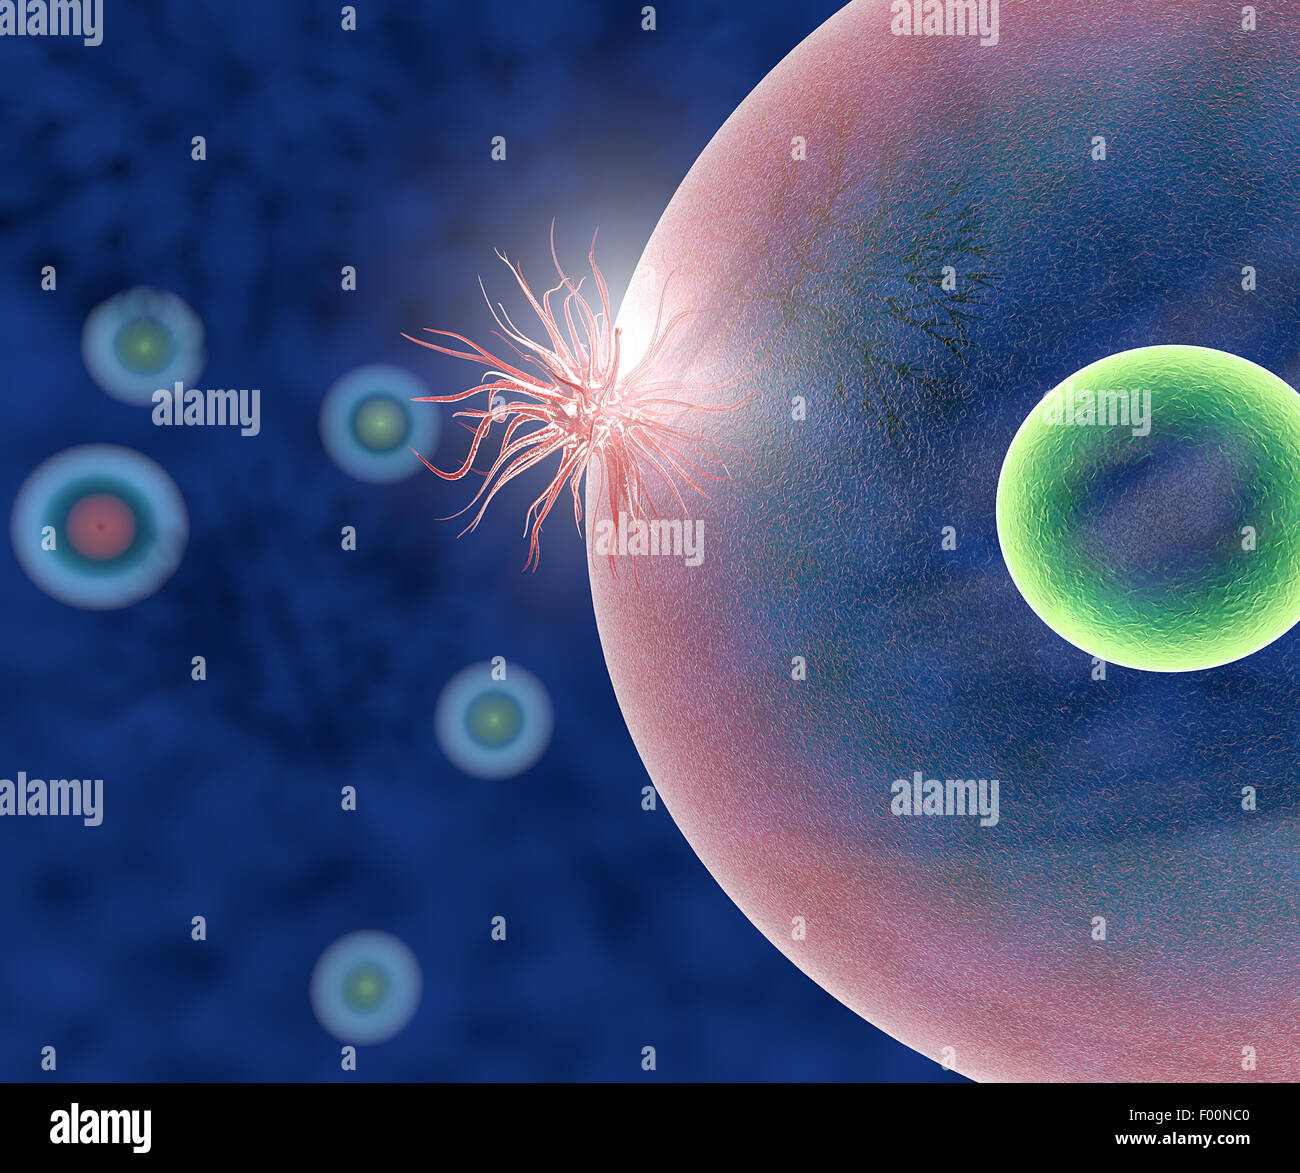 3d Illustration of virus inside human body Stock Photo